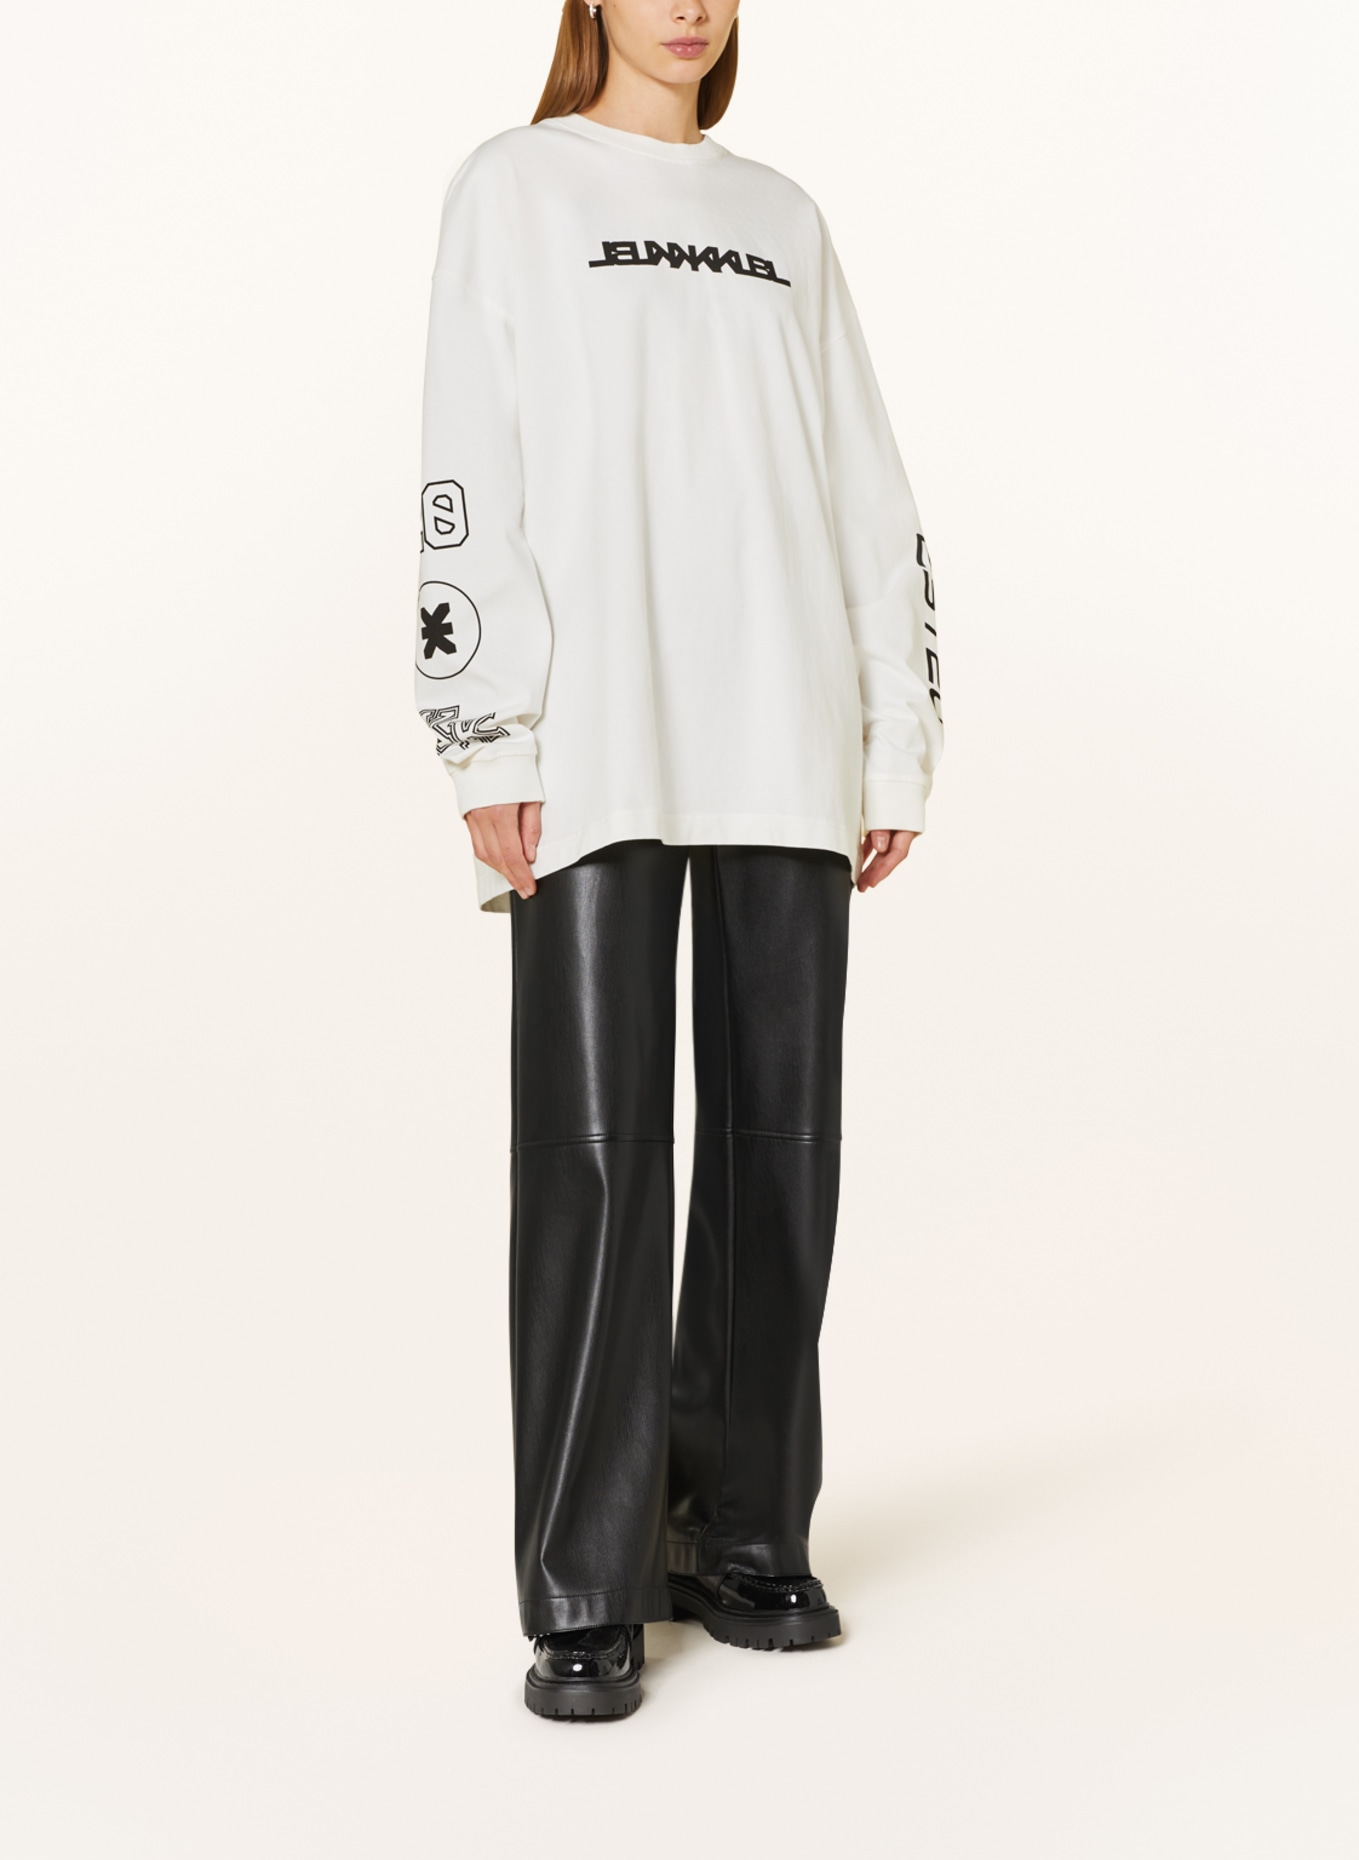 KARO KAUER Oversized sweatshirt, Color: WHITE (Image 3)